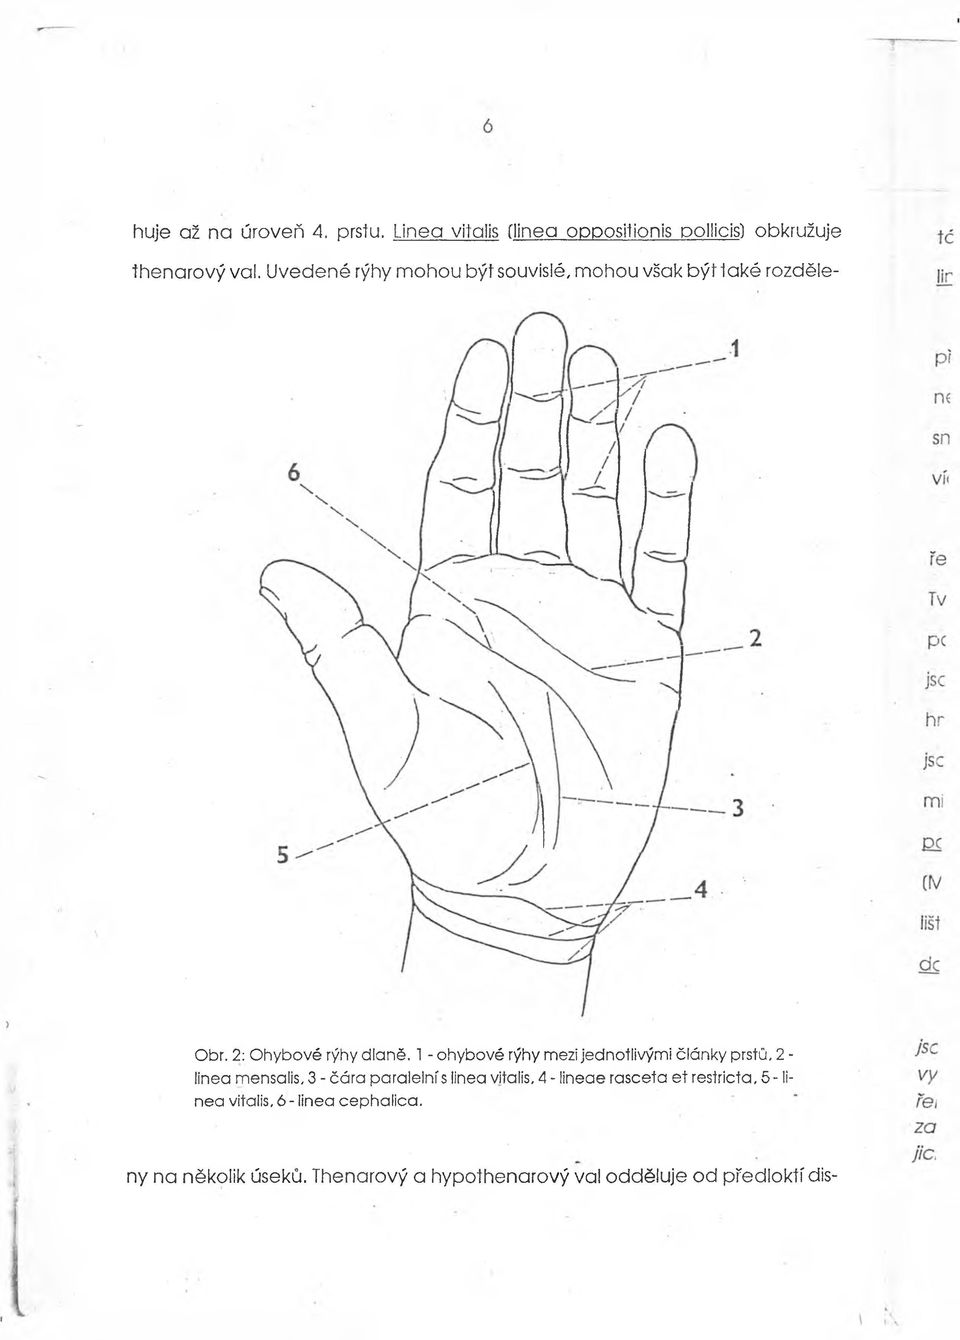 1 - ohybové rýhy mezi jednotlivými články prstů, 2 - linea mensalis, 3 - čára paralelnís linea vitalis, 4 -